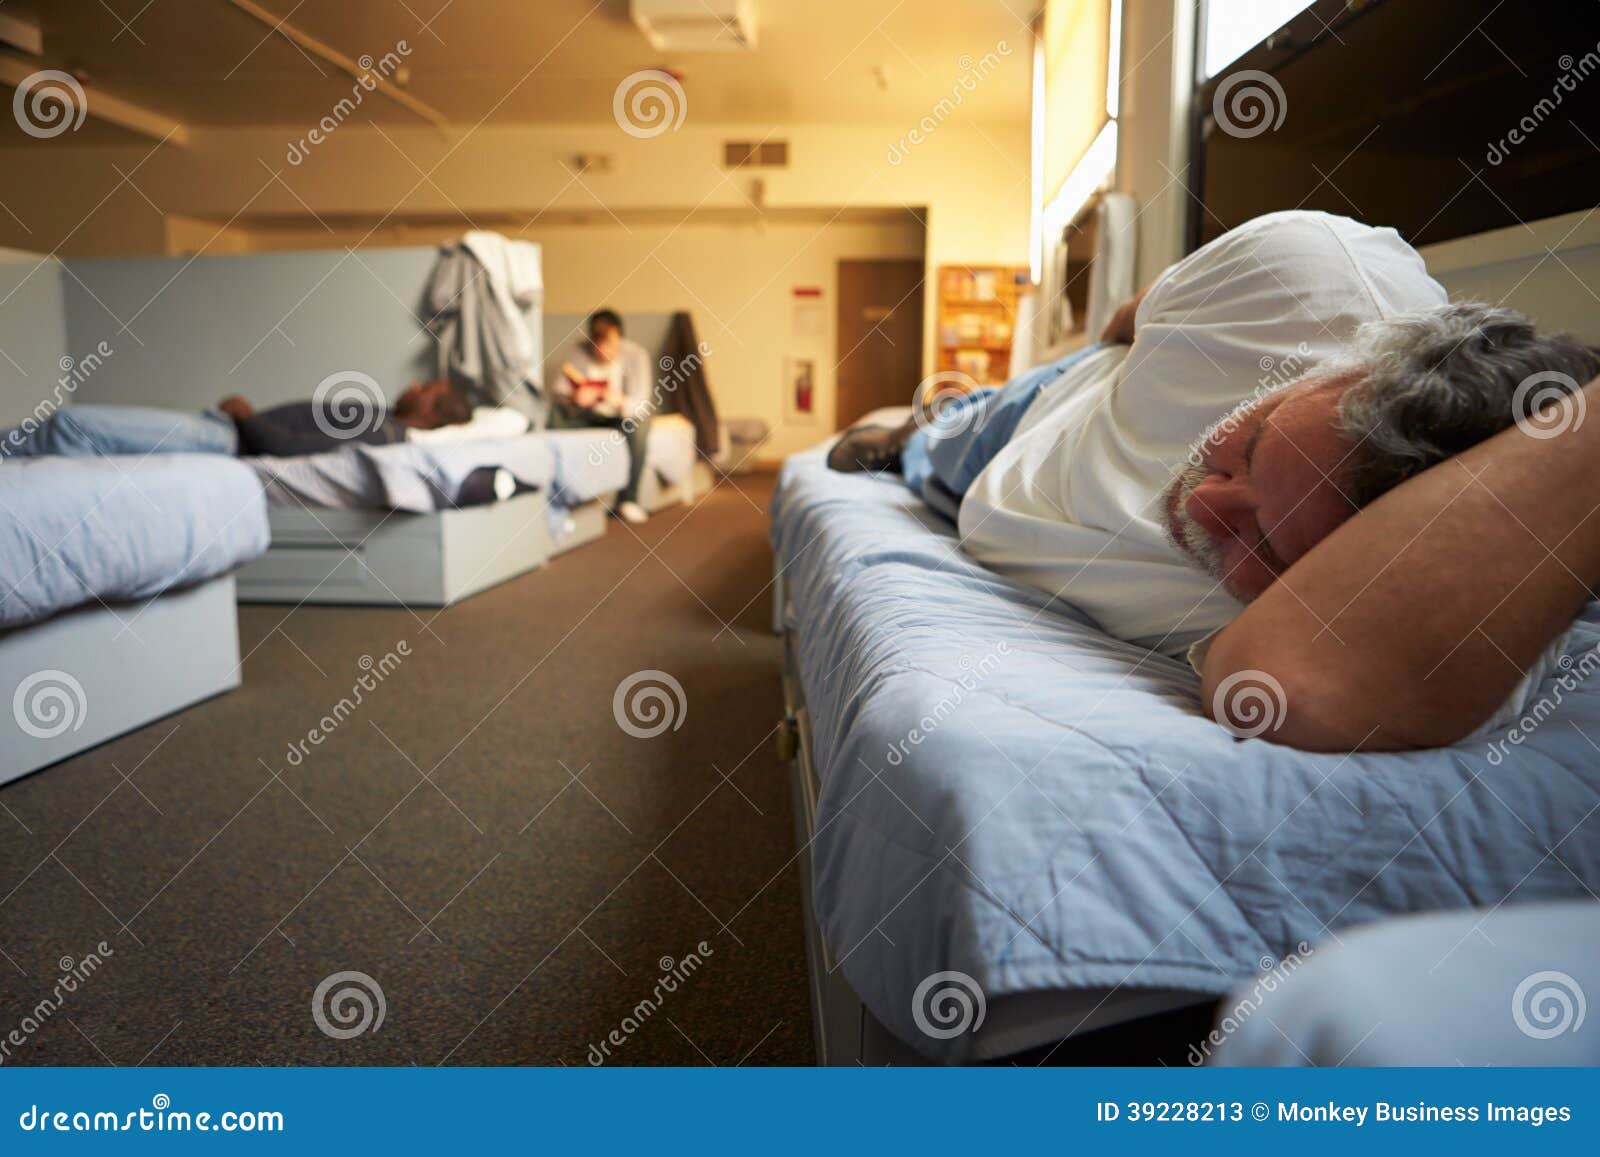 men lying on beds in homeless shelter